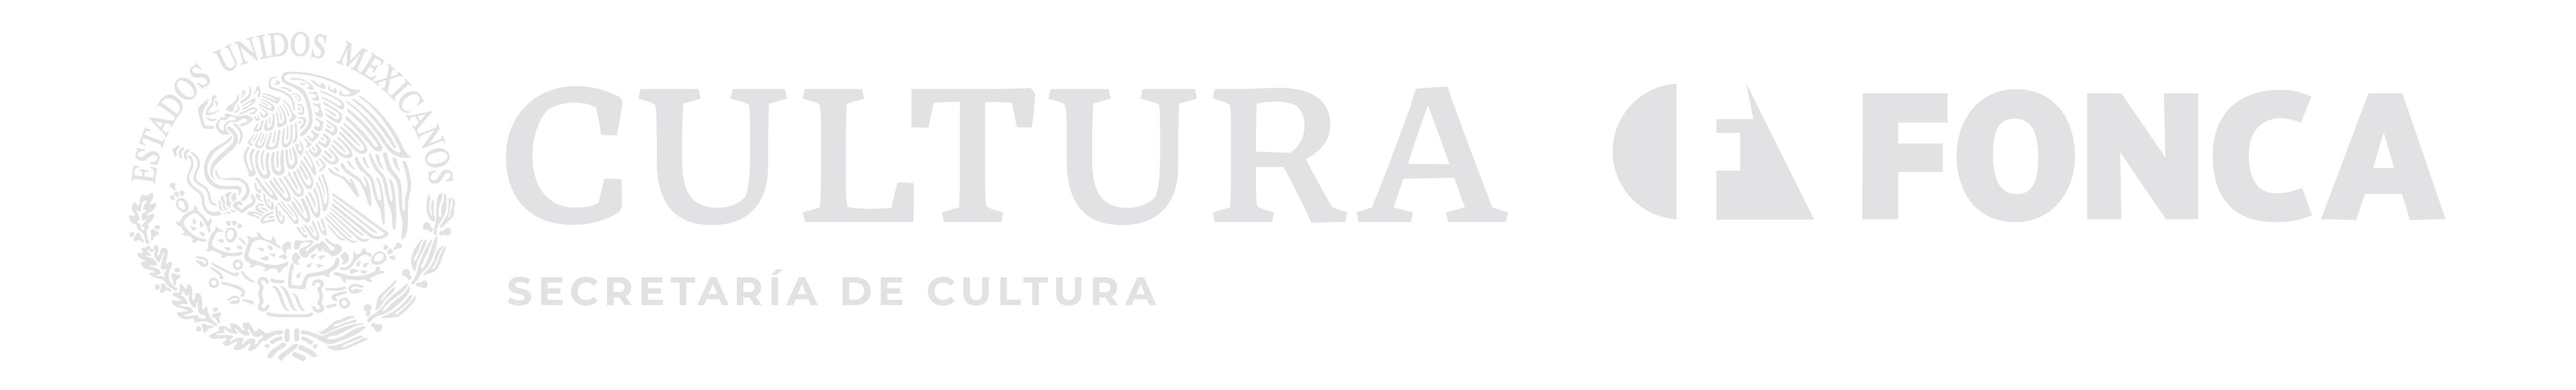 Logotipo cultura fonca